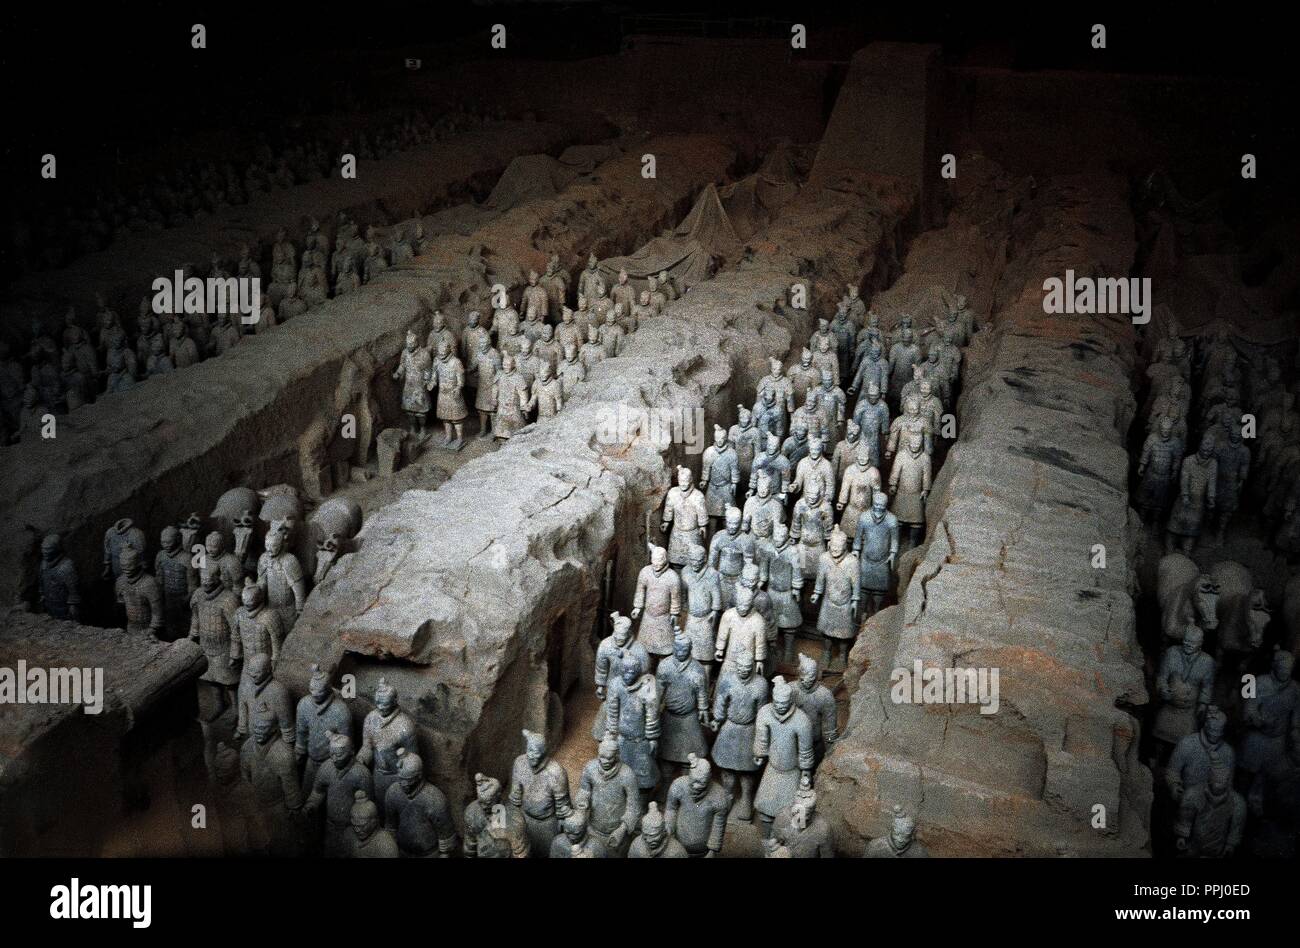 ESCULTURA - EJERCITO DE color terracotta - S III AC - dinastia Quing. Posizione: MAUSOLEO DE Qin Shi Huang. Foto Stock